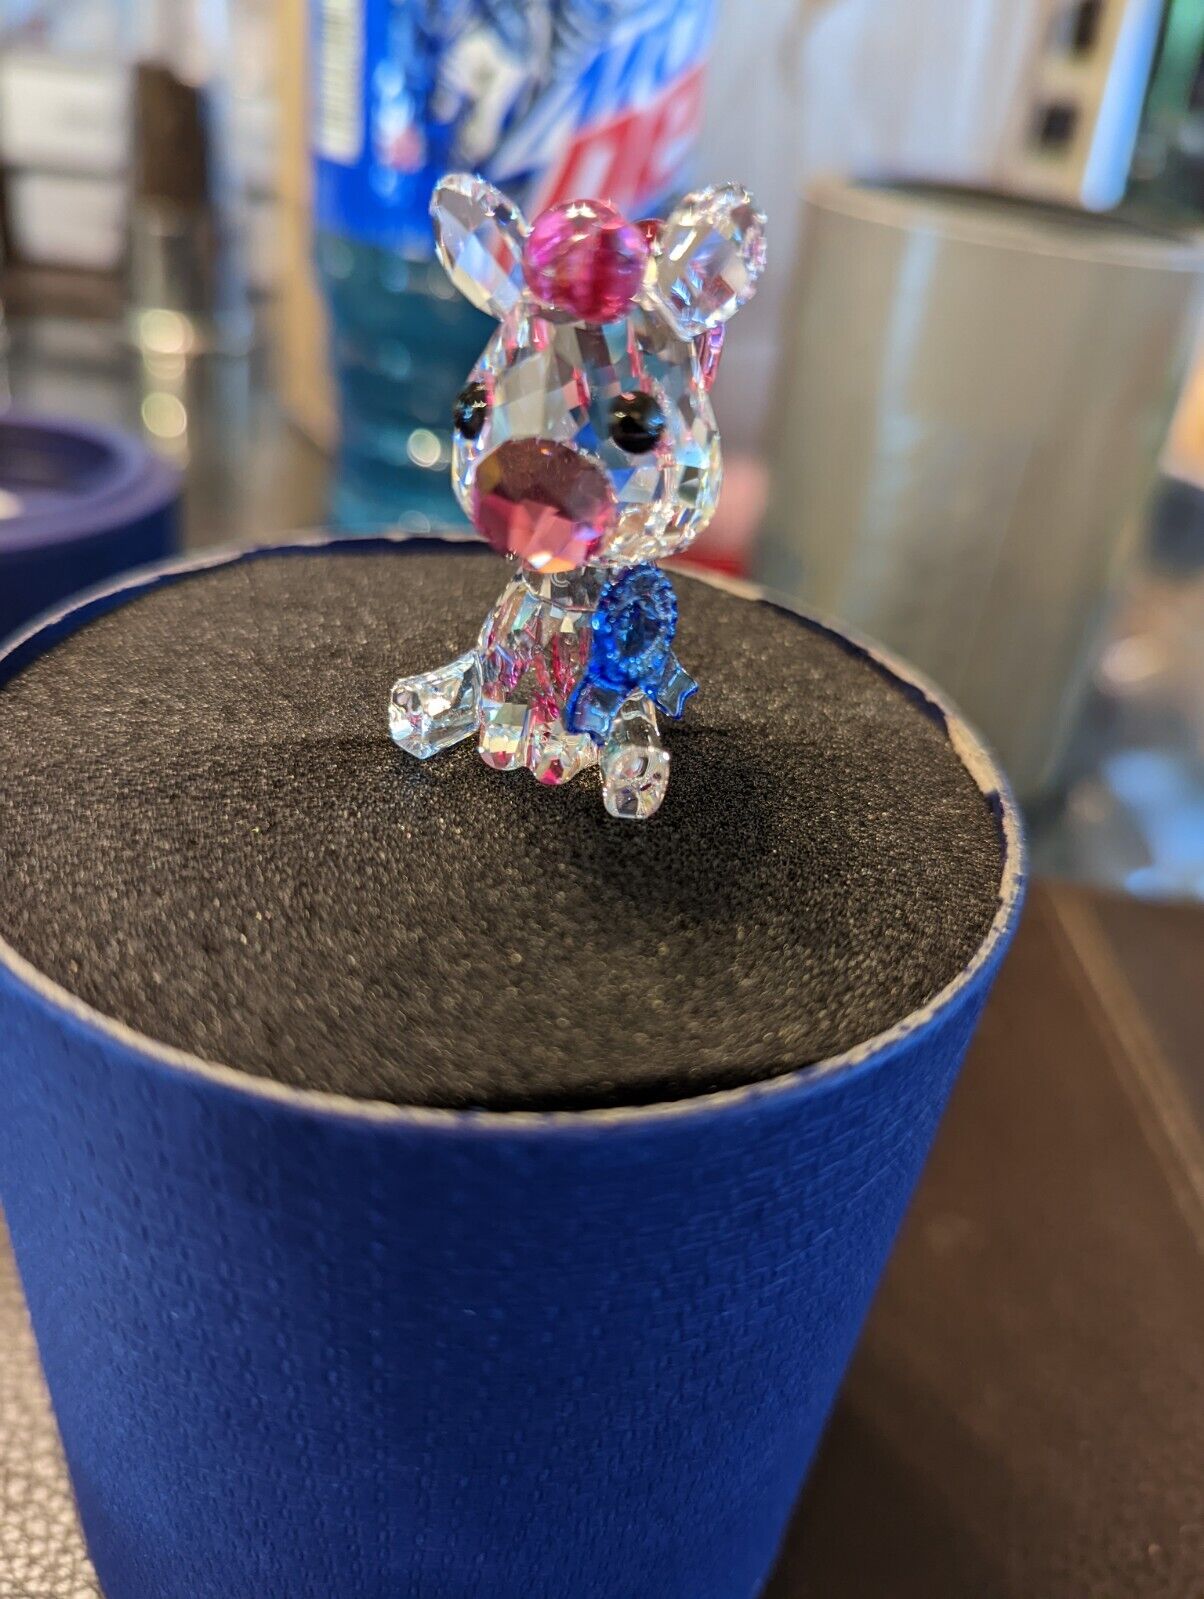 NIB 100% Authentic Swarovski Speedy the Pony Blue Pink Crystal Figurine #5506810